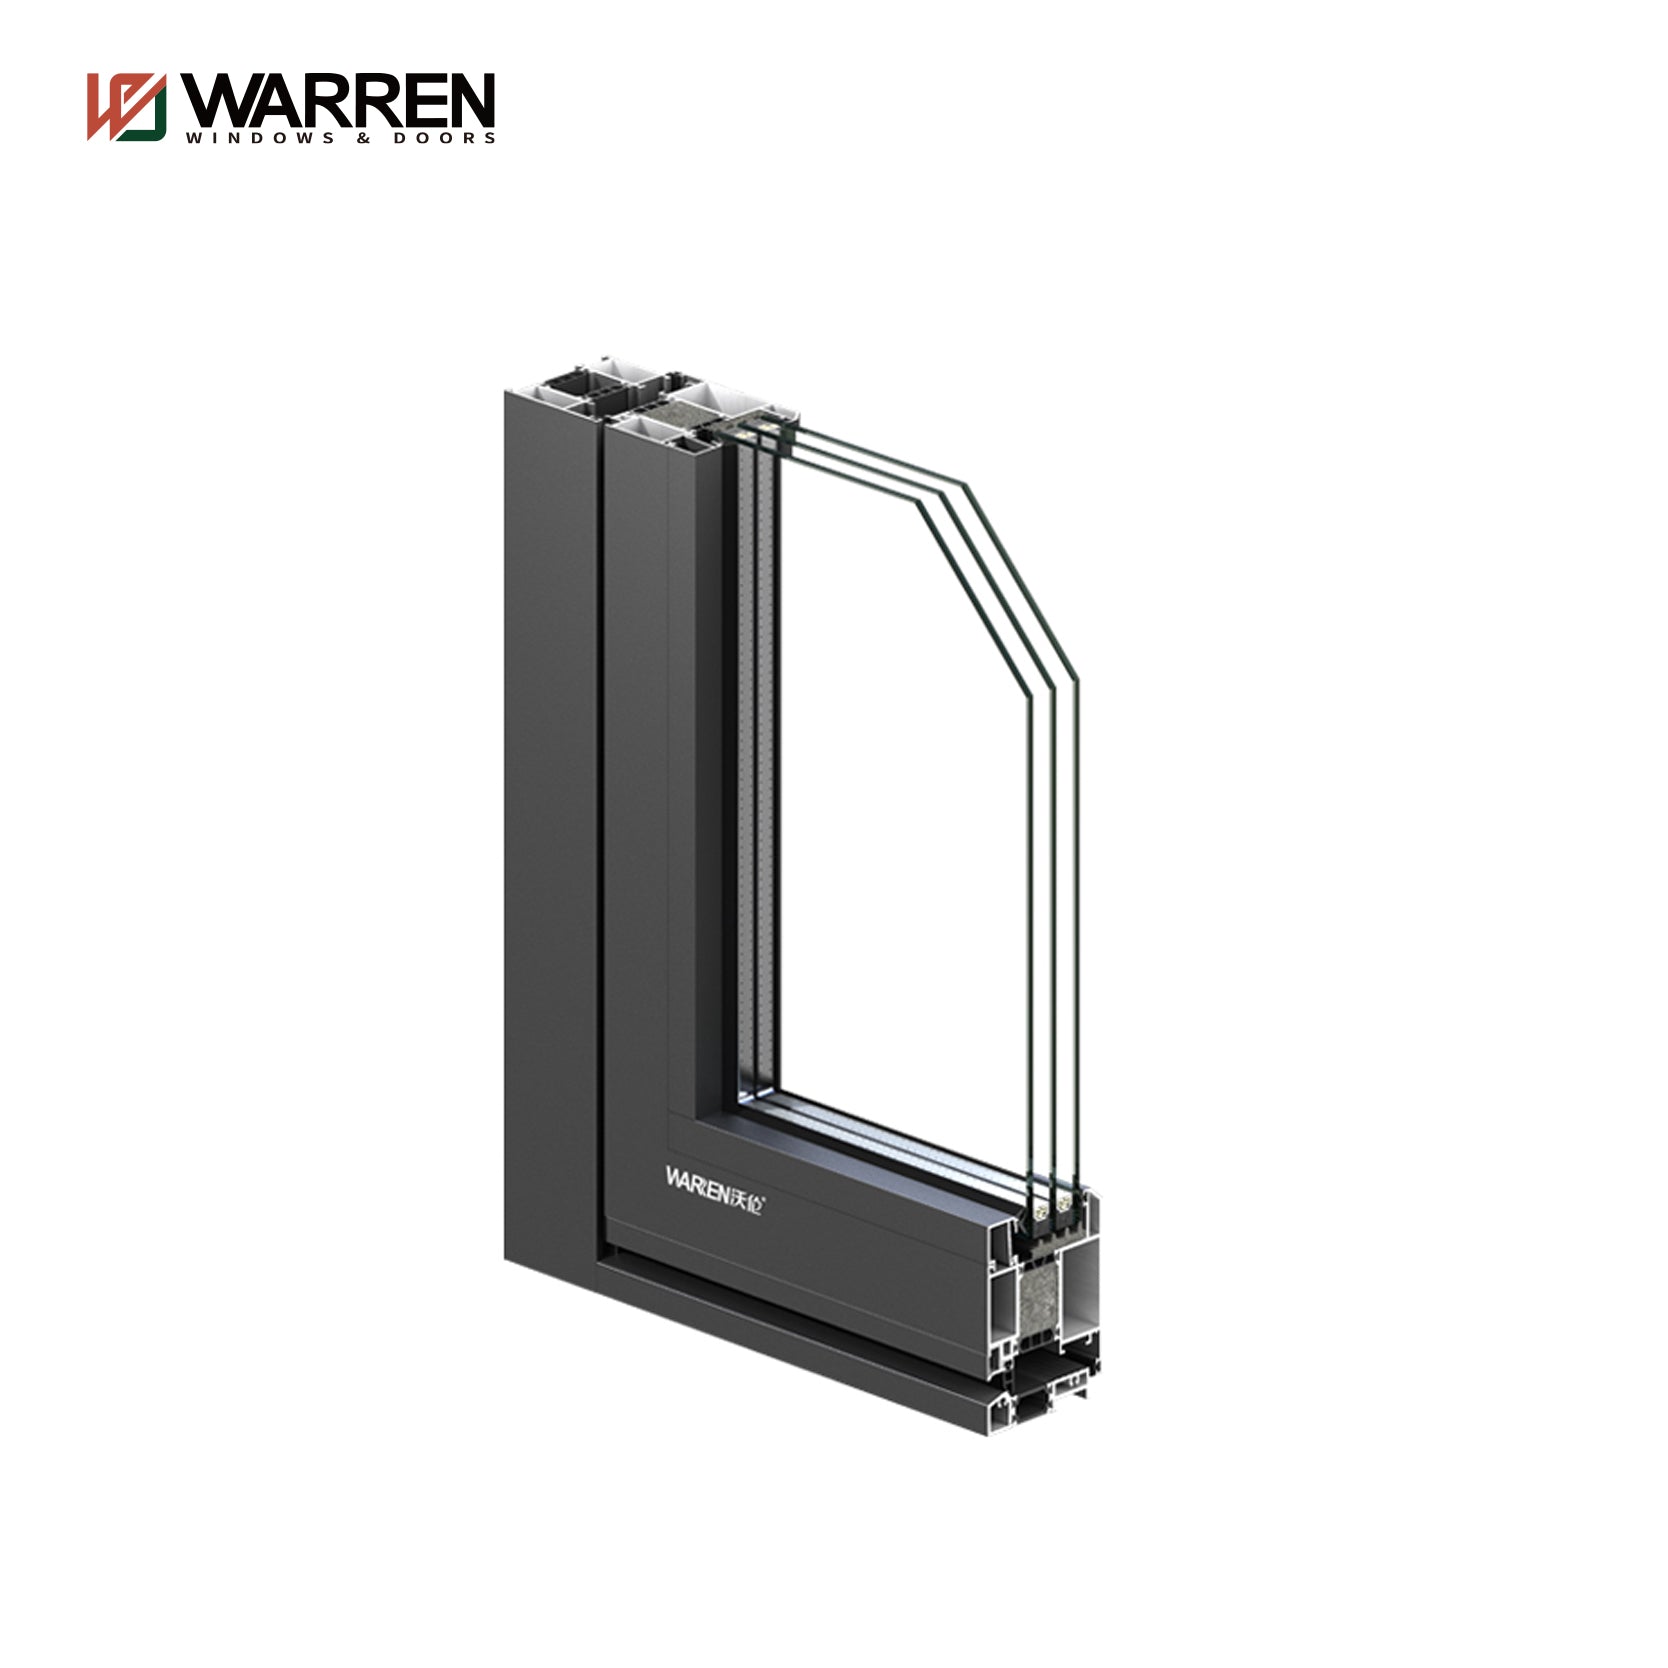 Warren Aluminium Glass Casement Doors Thermal Break French Door Patio French Door  For House